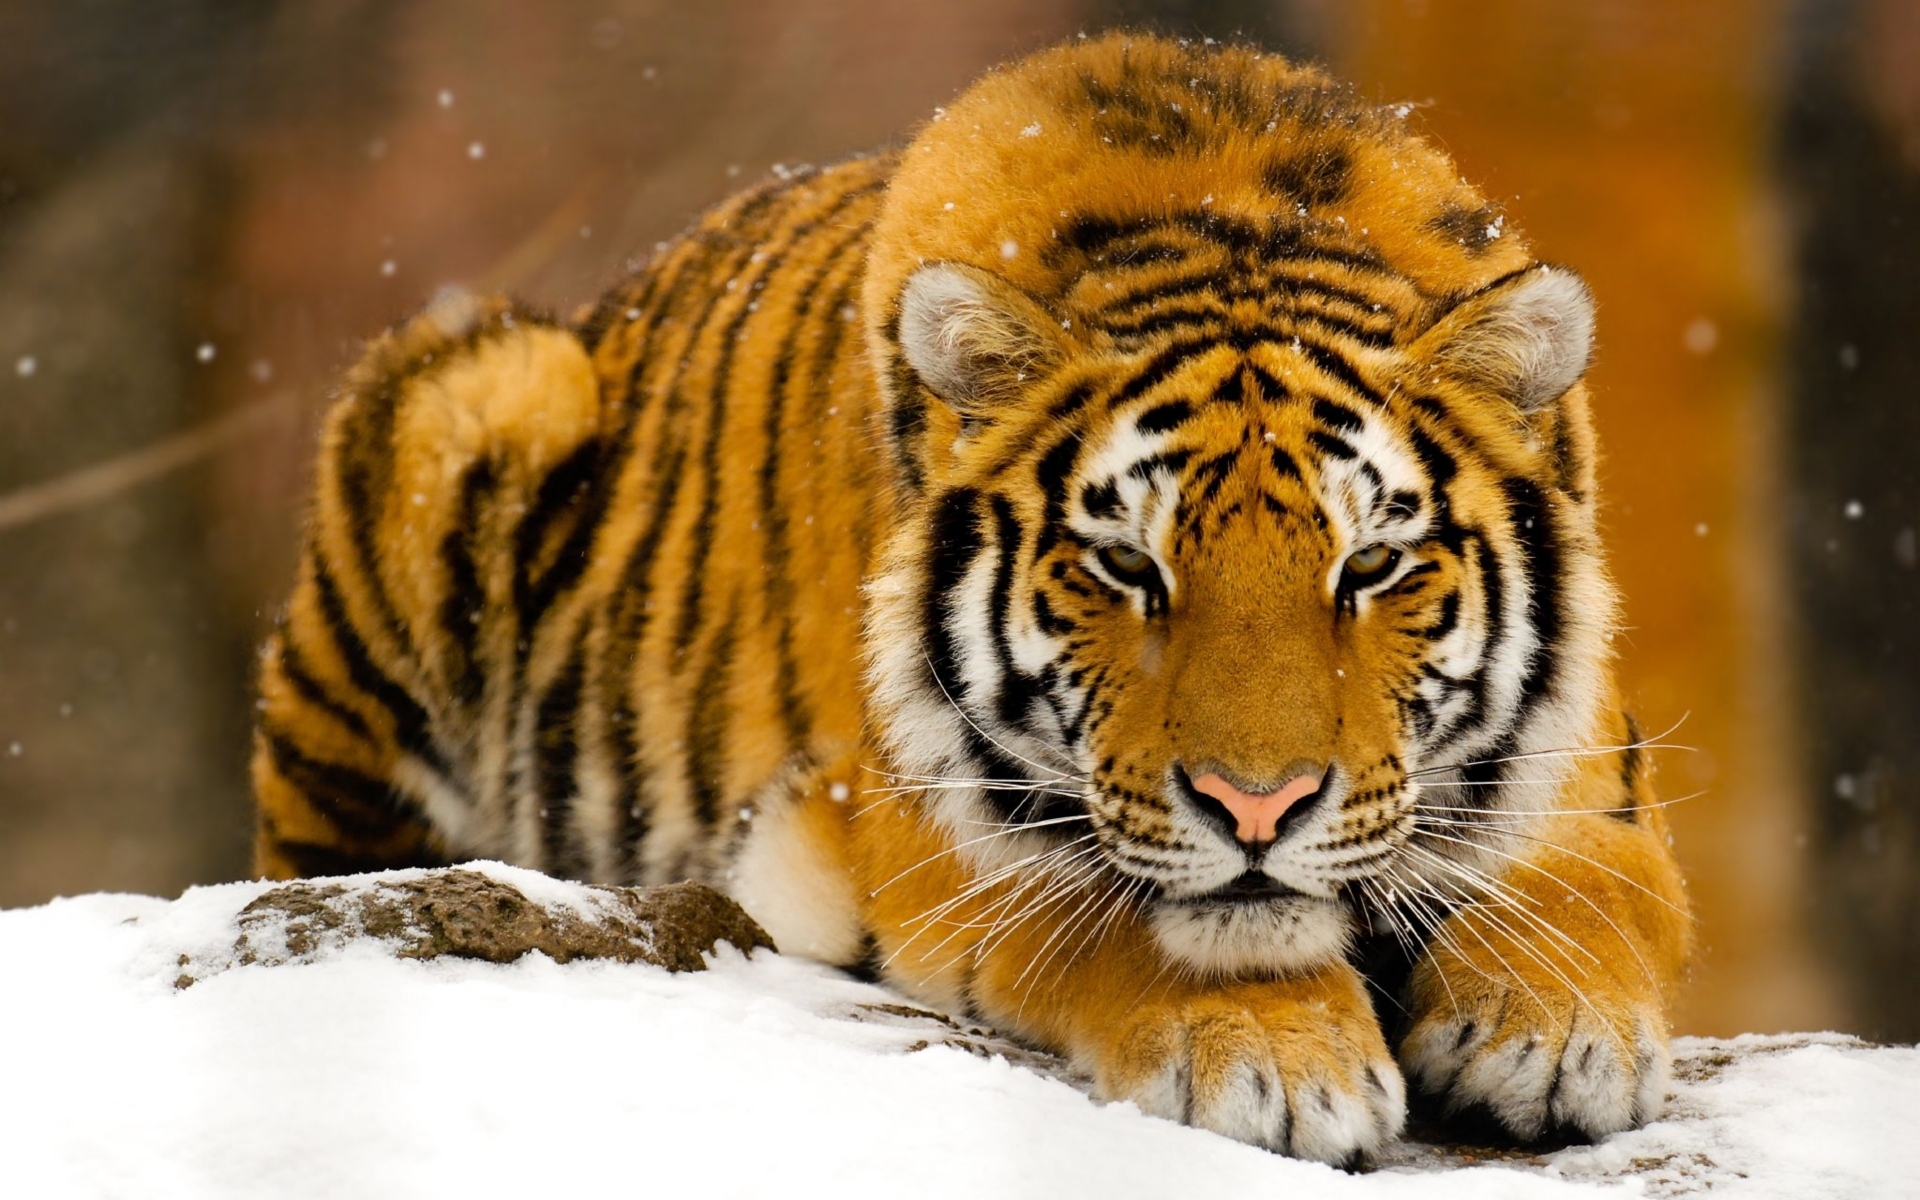 Скачать обои бесплатно Животные, Тигры, Зима картинка на рабочий стол ПК